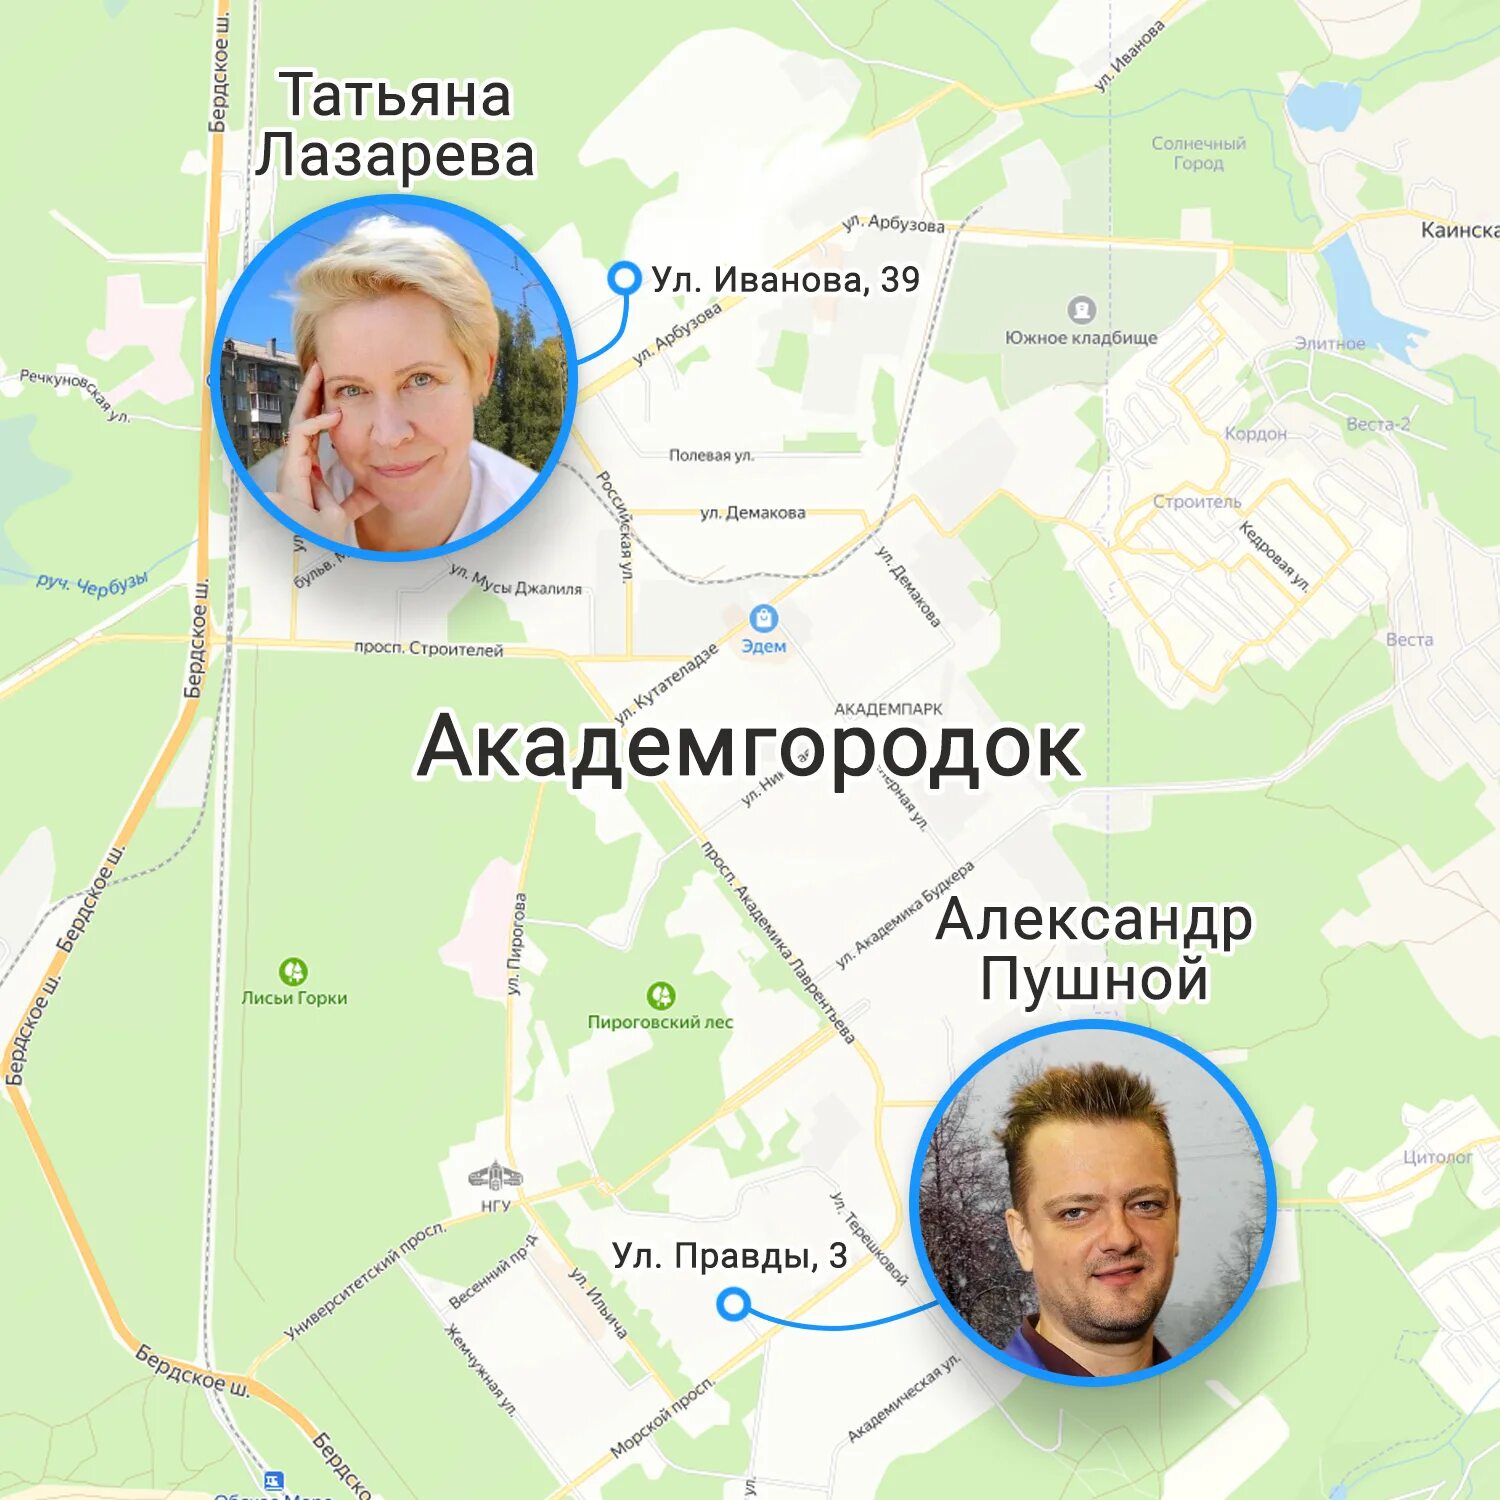 Какие известные люди живут в новосибирске. Известные люди жившие в Новосибирске. Карта где живут знаменитости. Знаменитости которые живут в Новосибирске. Знаменитости проживающие в Москве.